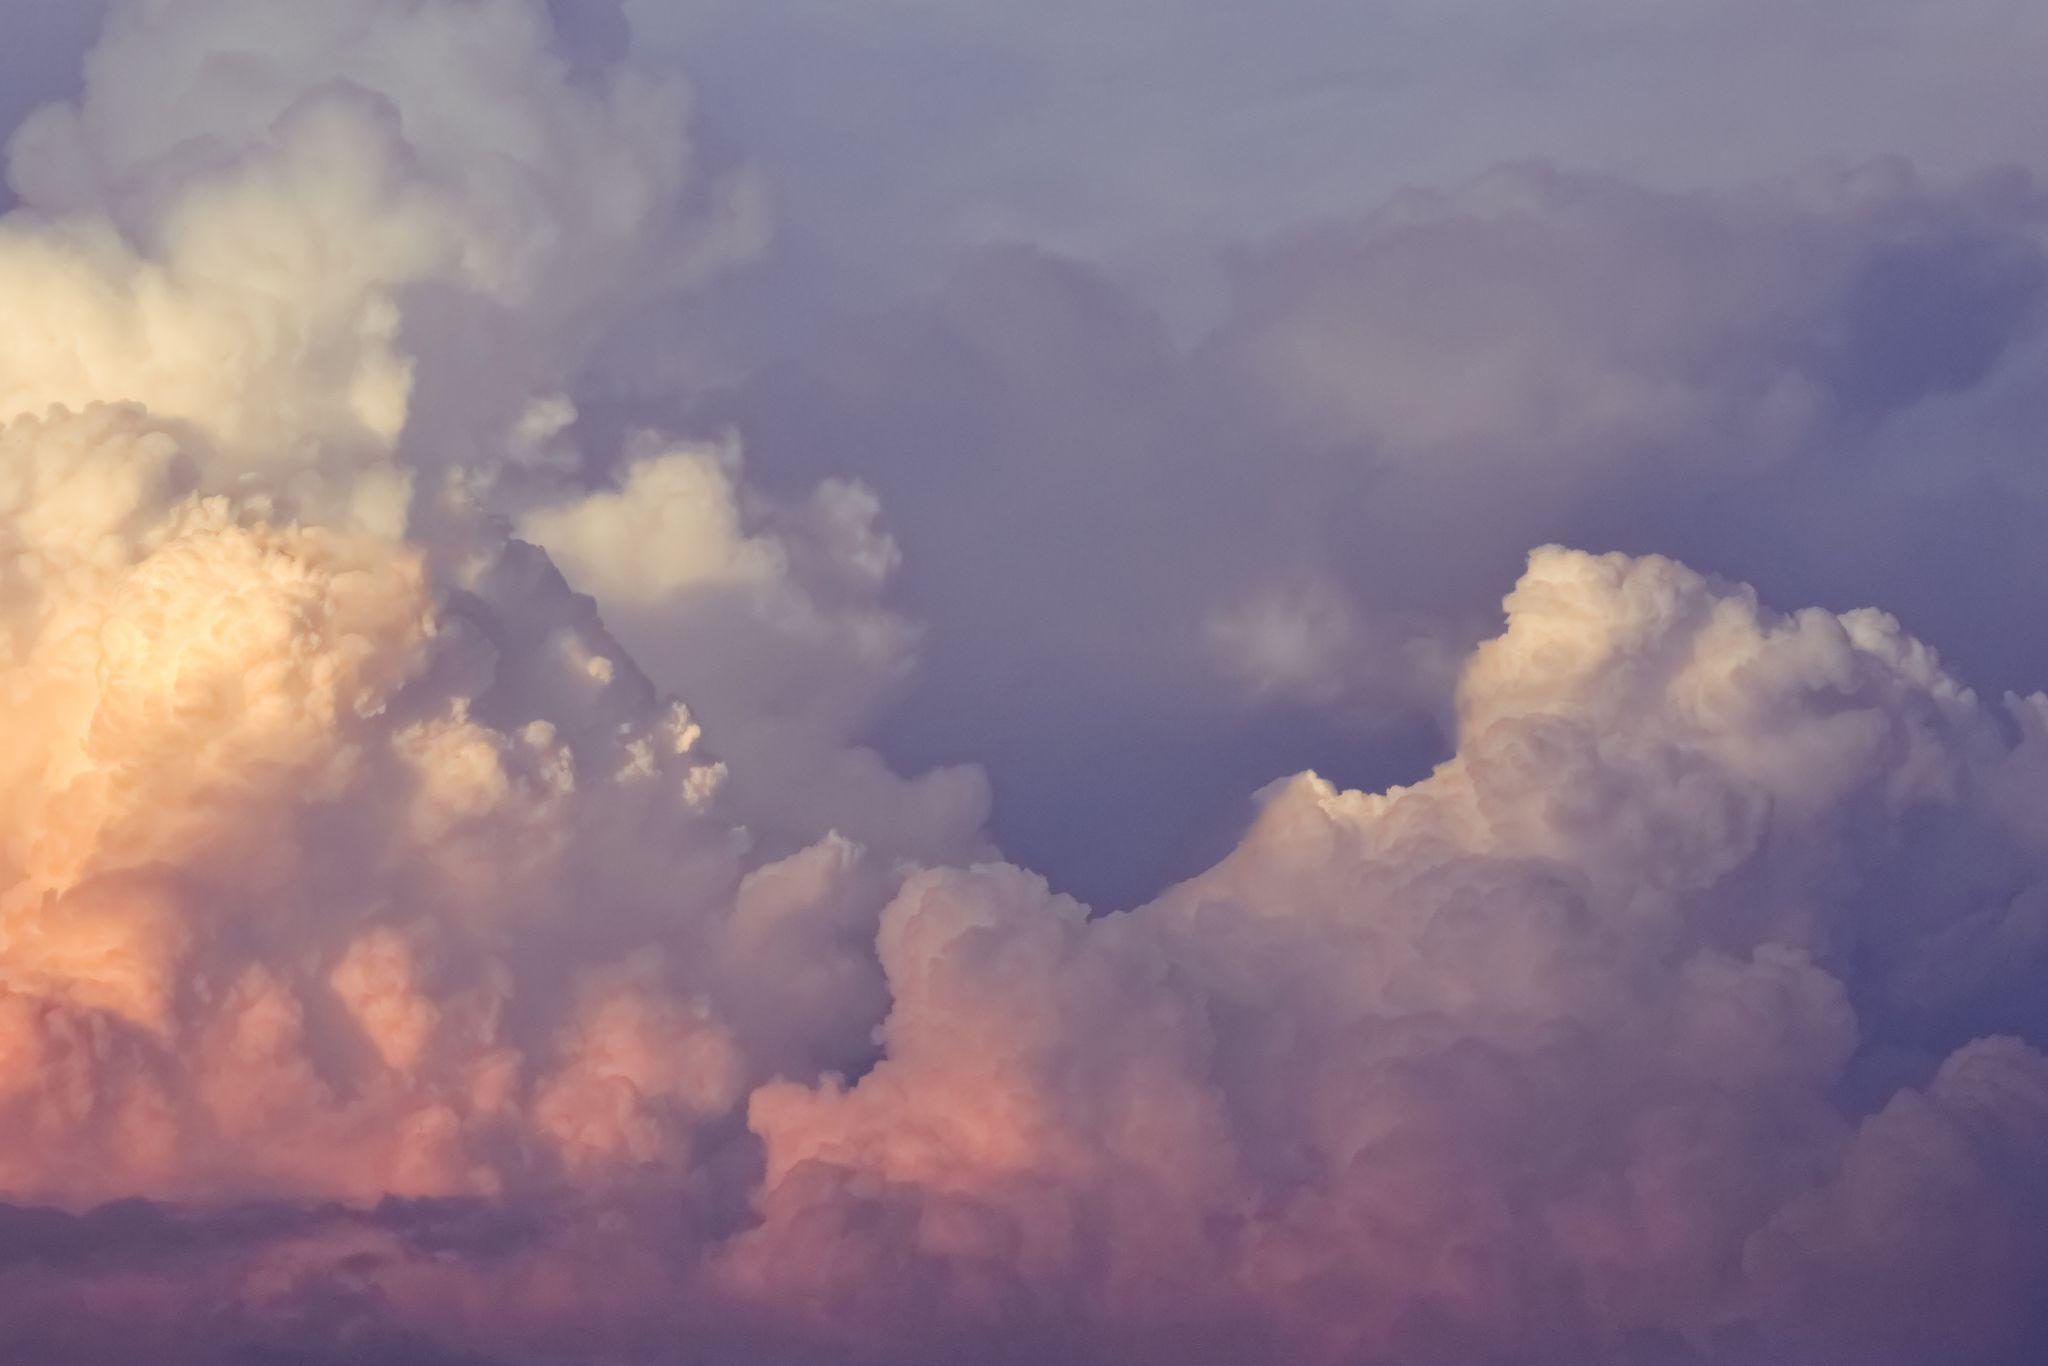 图片素材 : 天空, 大气层, 白天, 积云, 雷雨, 云形式, 气象现象, 云山, 束云彩, 地球大气 2000x1333 - - 609886 - 素材中国, 高清壁纸 - PxHere摄影图库